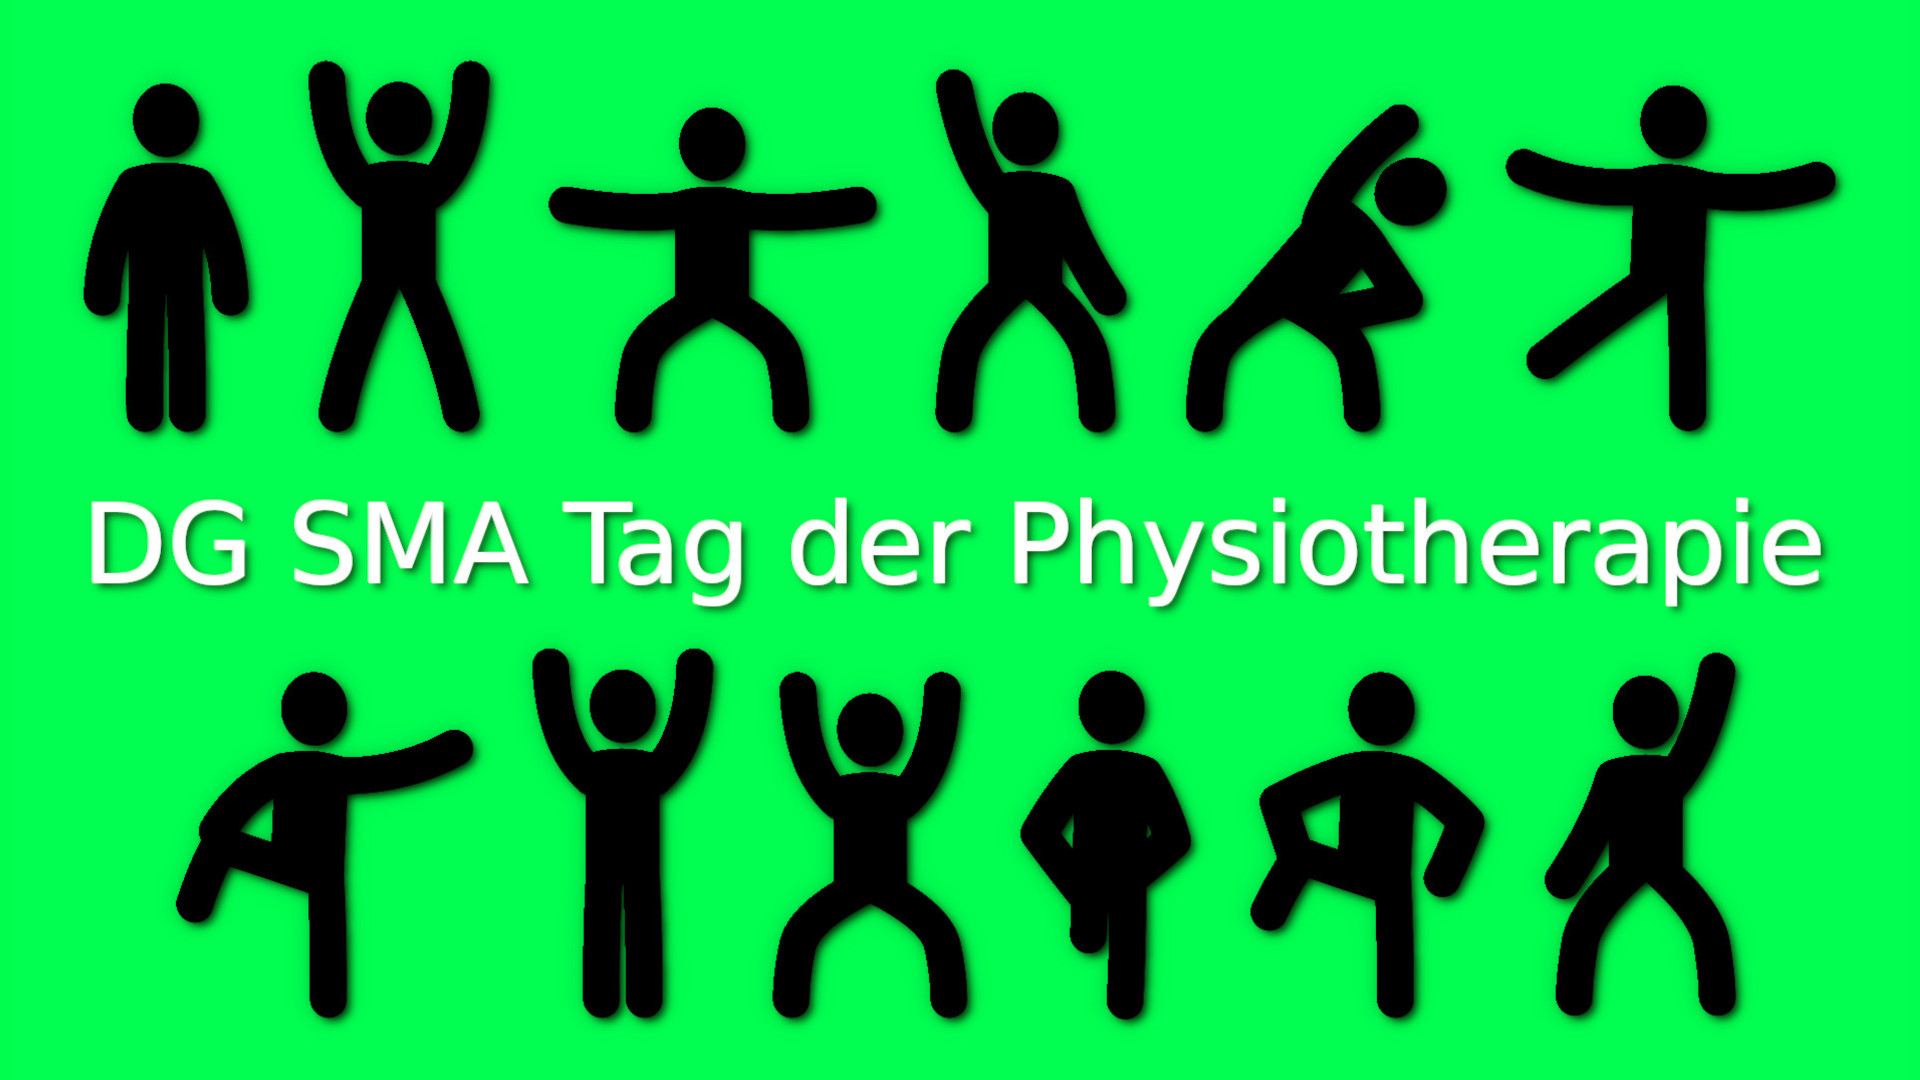 Tag der Physiotherapie am 25.06.2022 in Köln – die DG SMA lädt ein